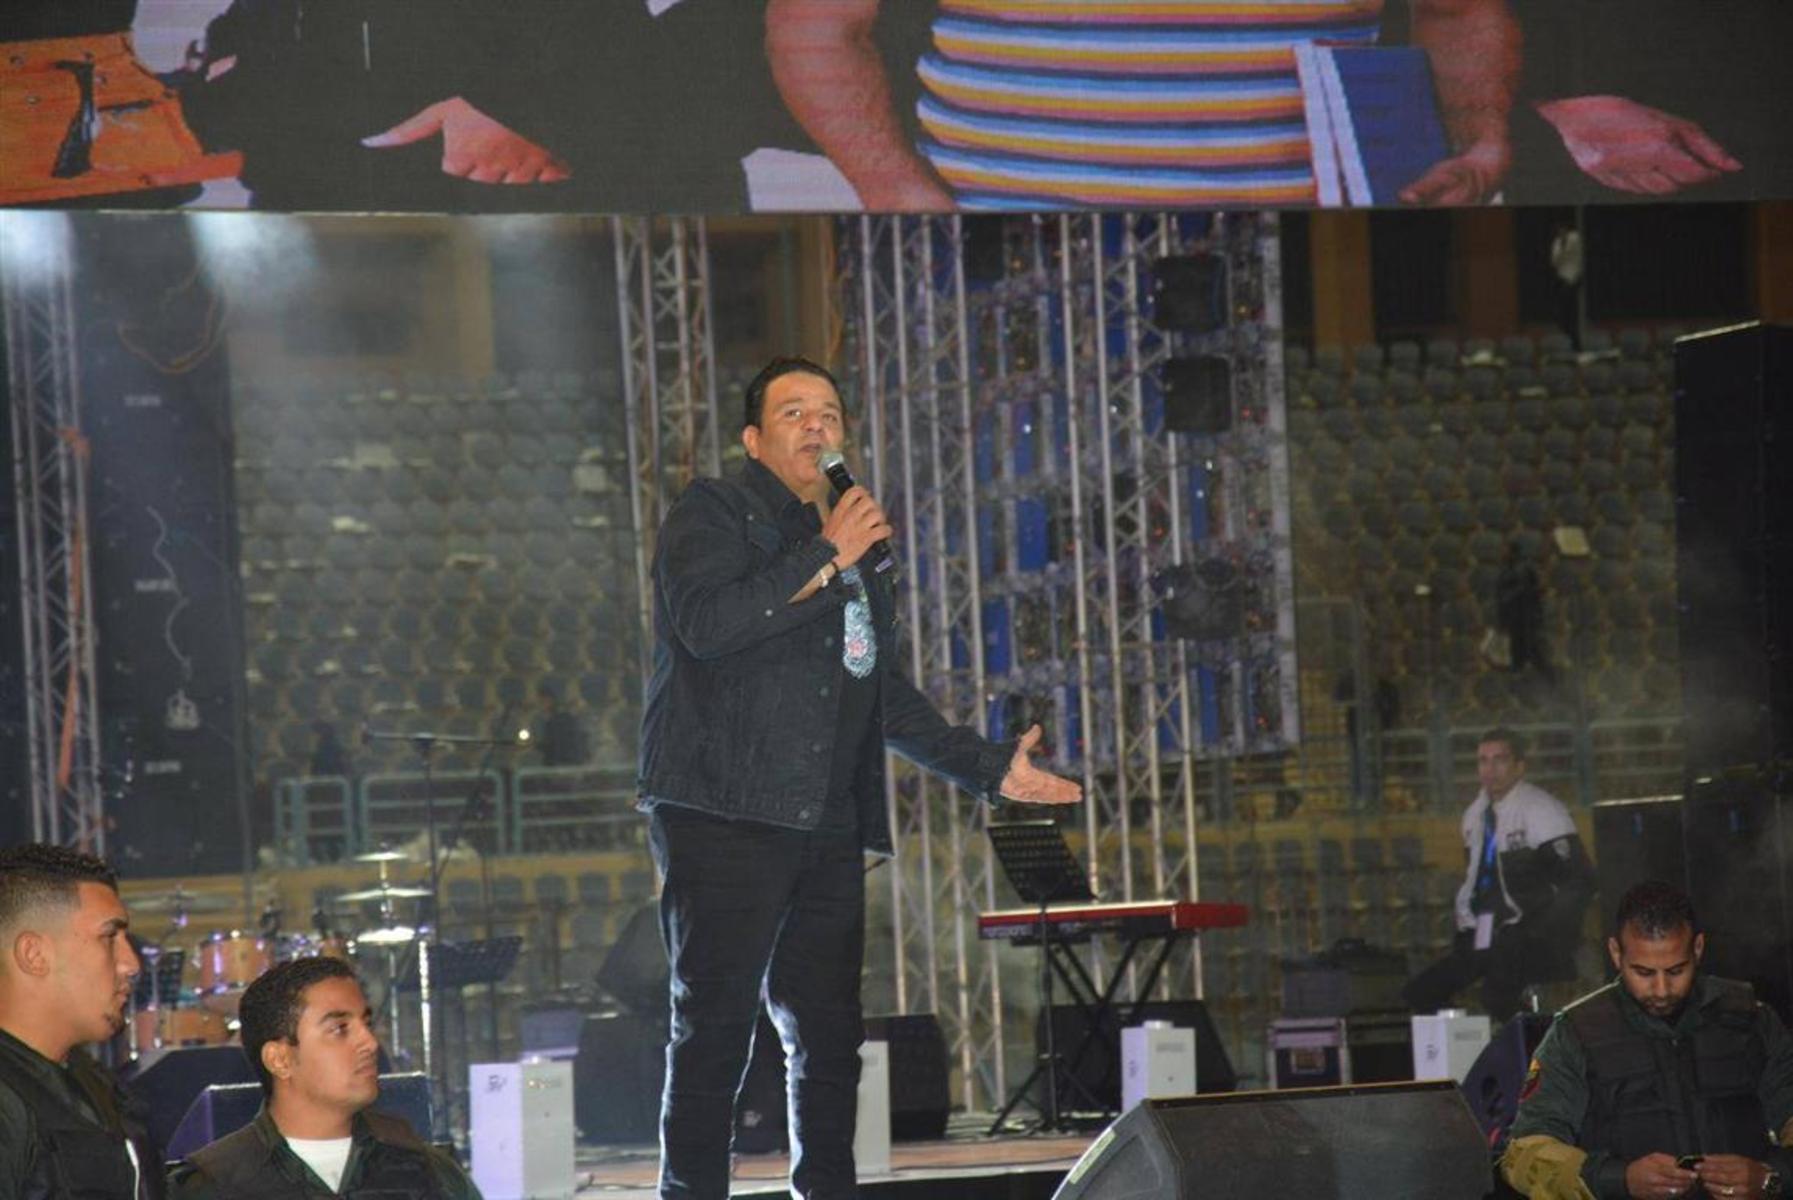   محمد فؤاد يشارك في الحفل الغنائي الكبير لدعم الرئيس السيسي بقنا